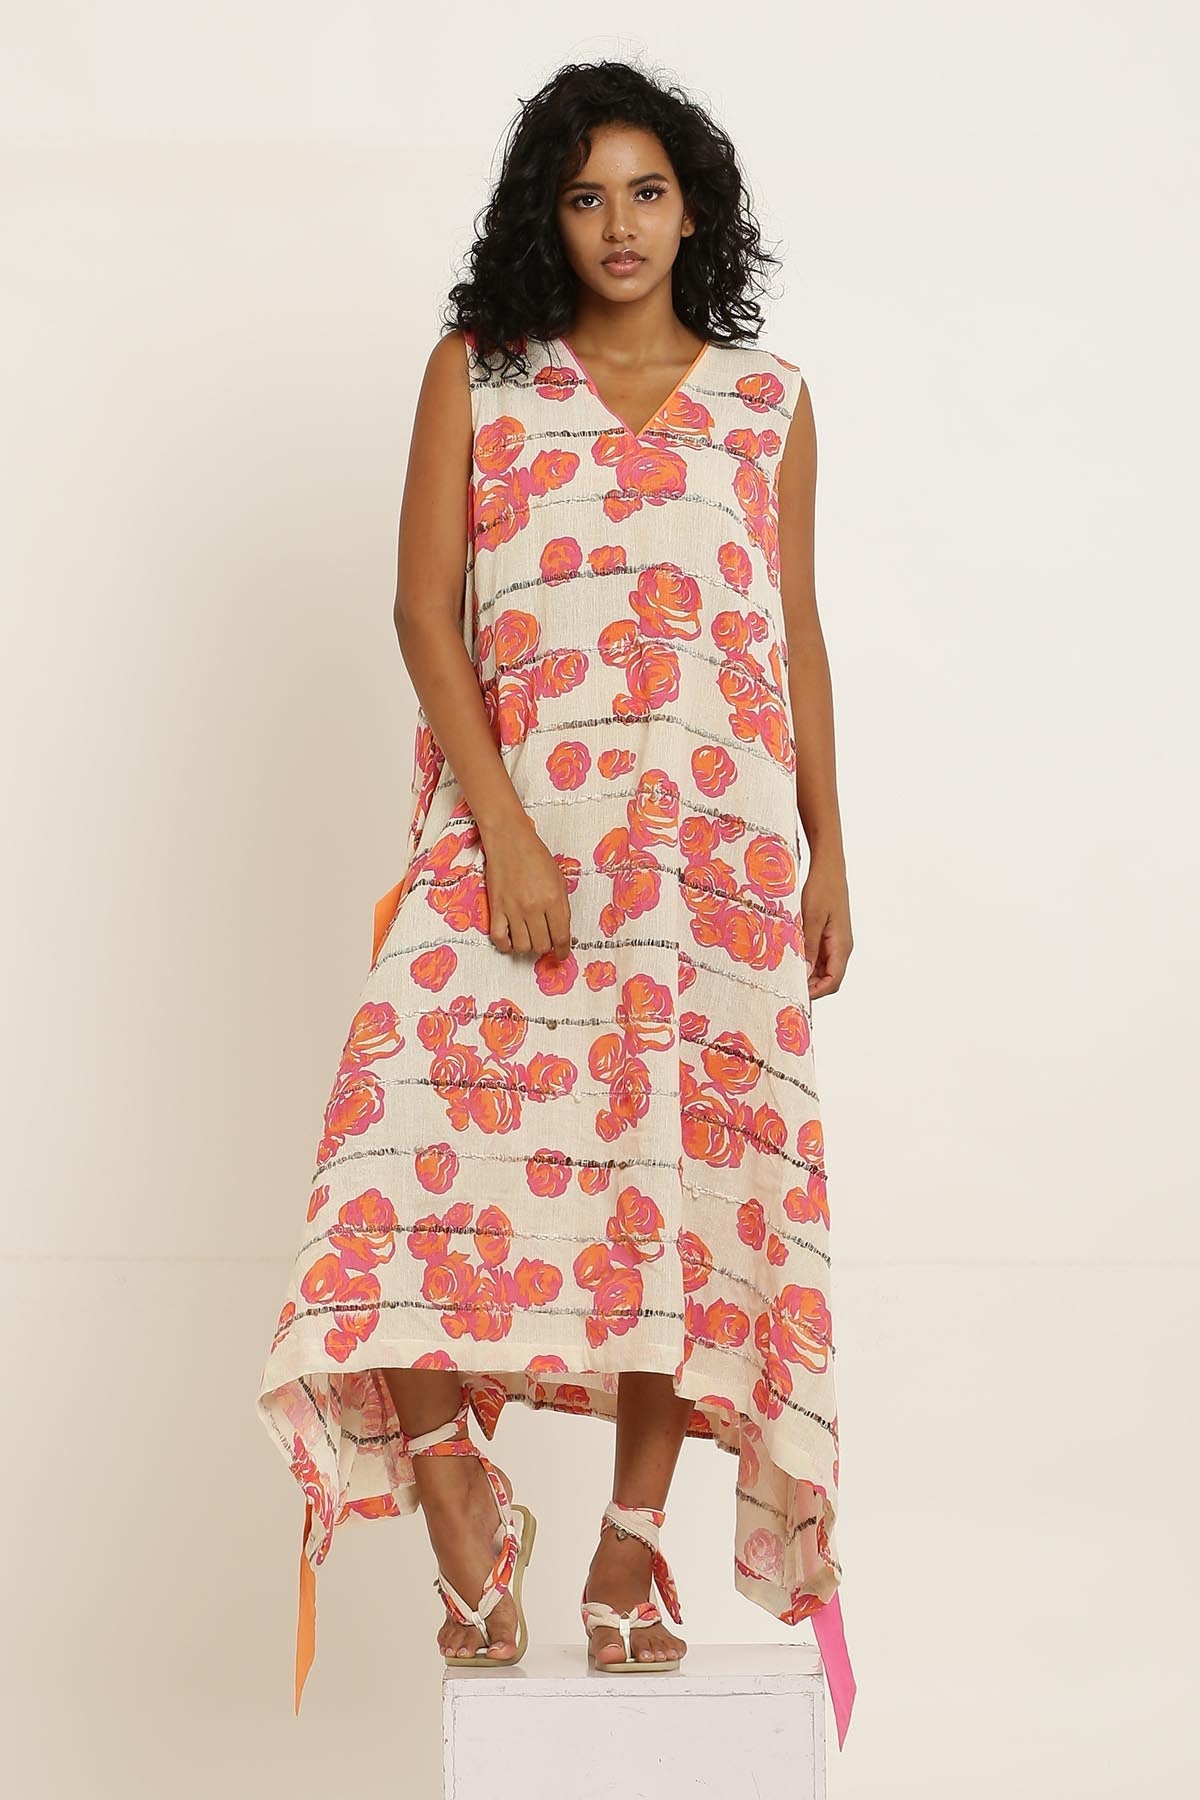 Designer Kusmi Luxury Pink Rose Printed Cotton Dress - Blushing Elegance For Women at ScrollnShops